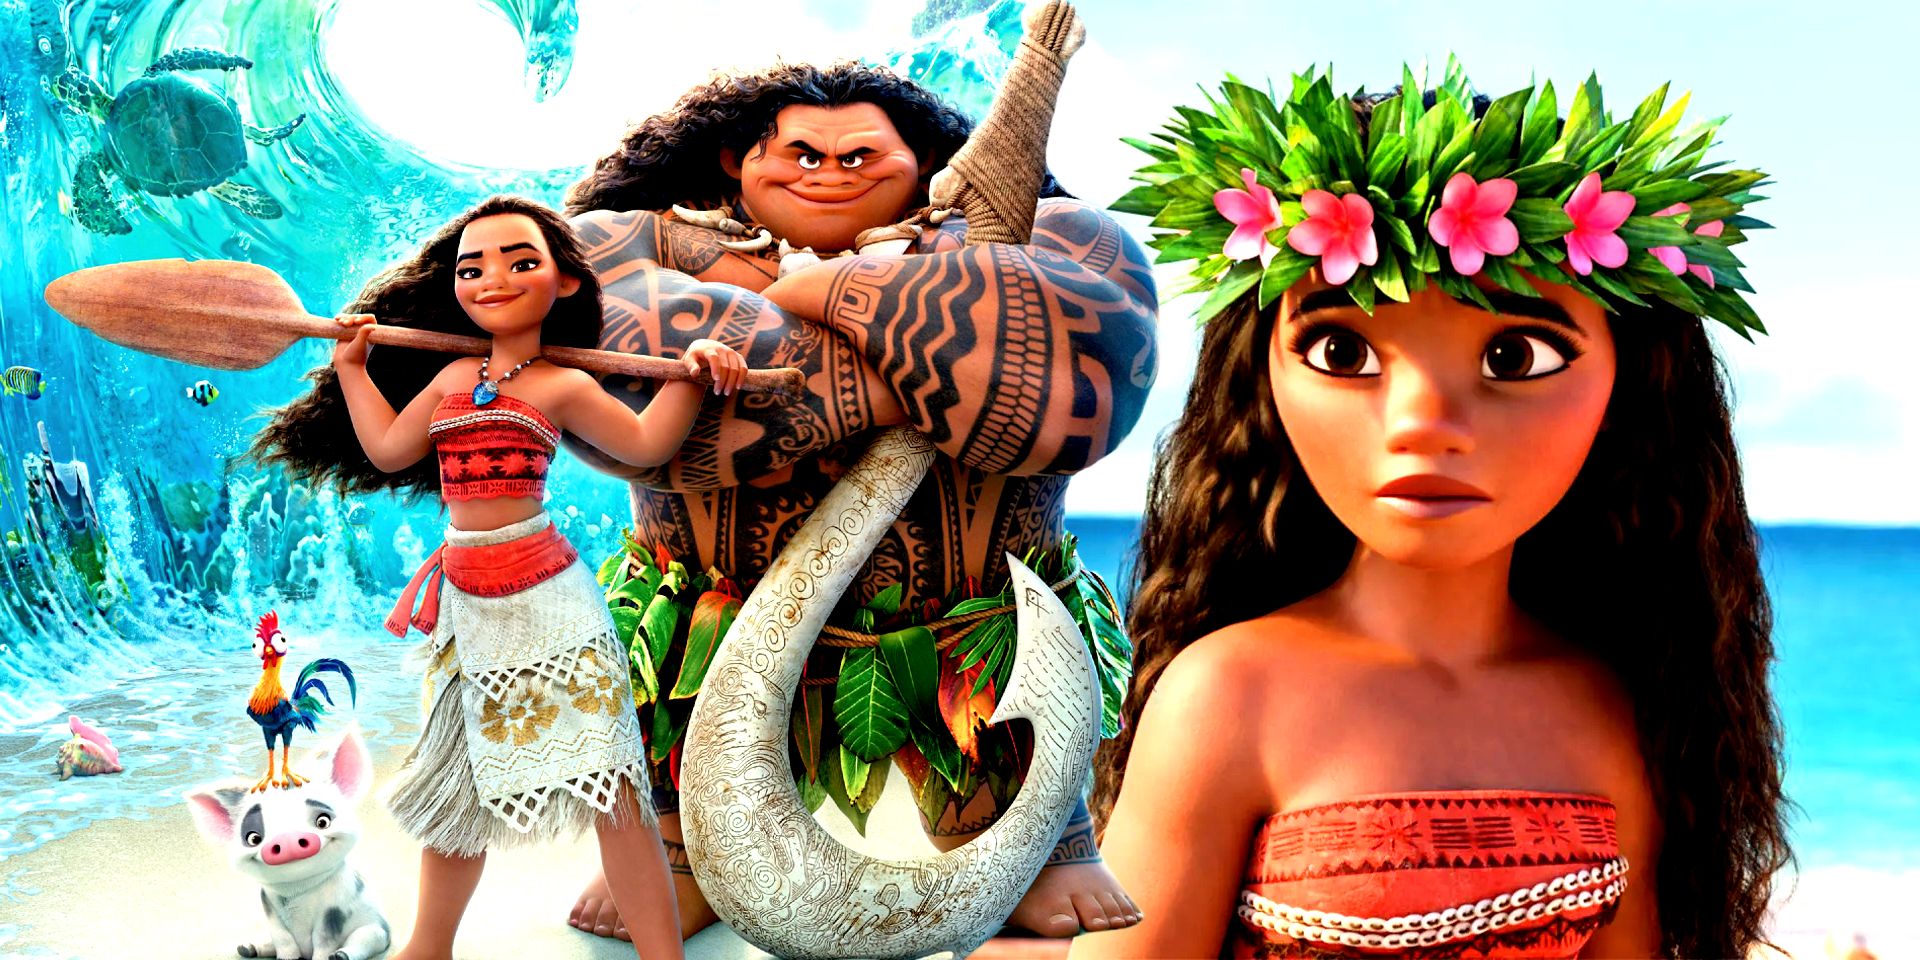 Moana, Maui and the characters of Moana